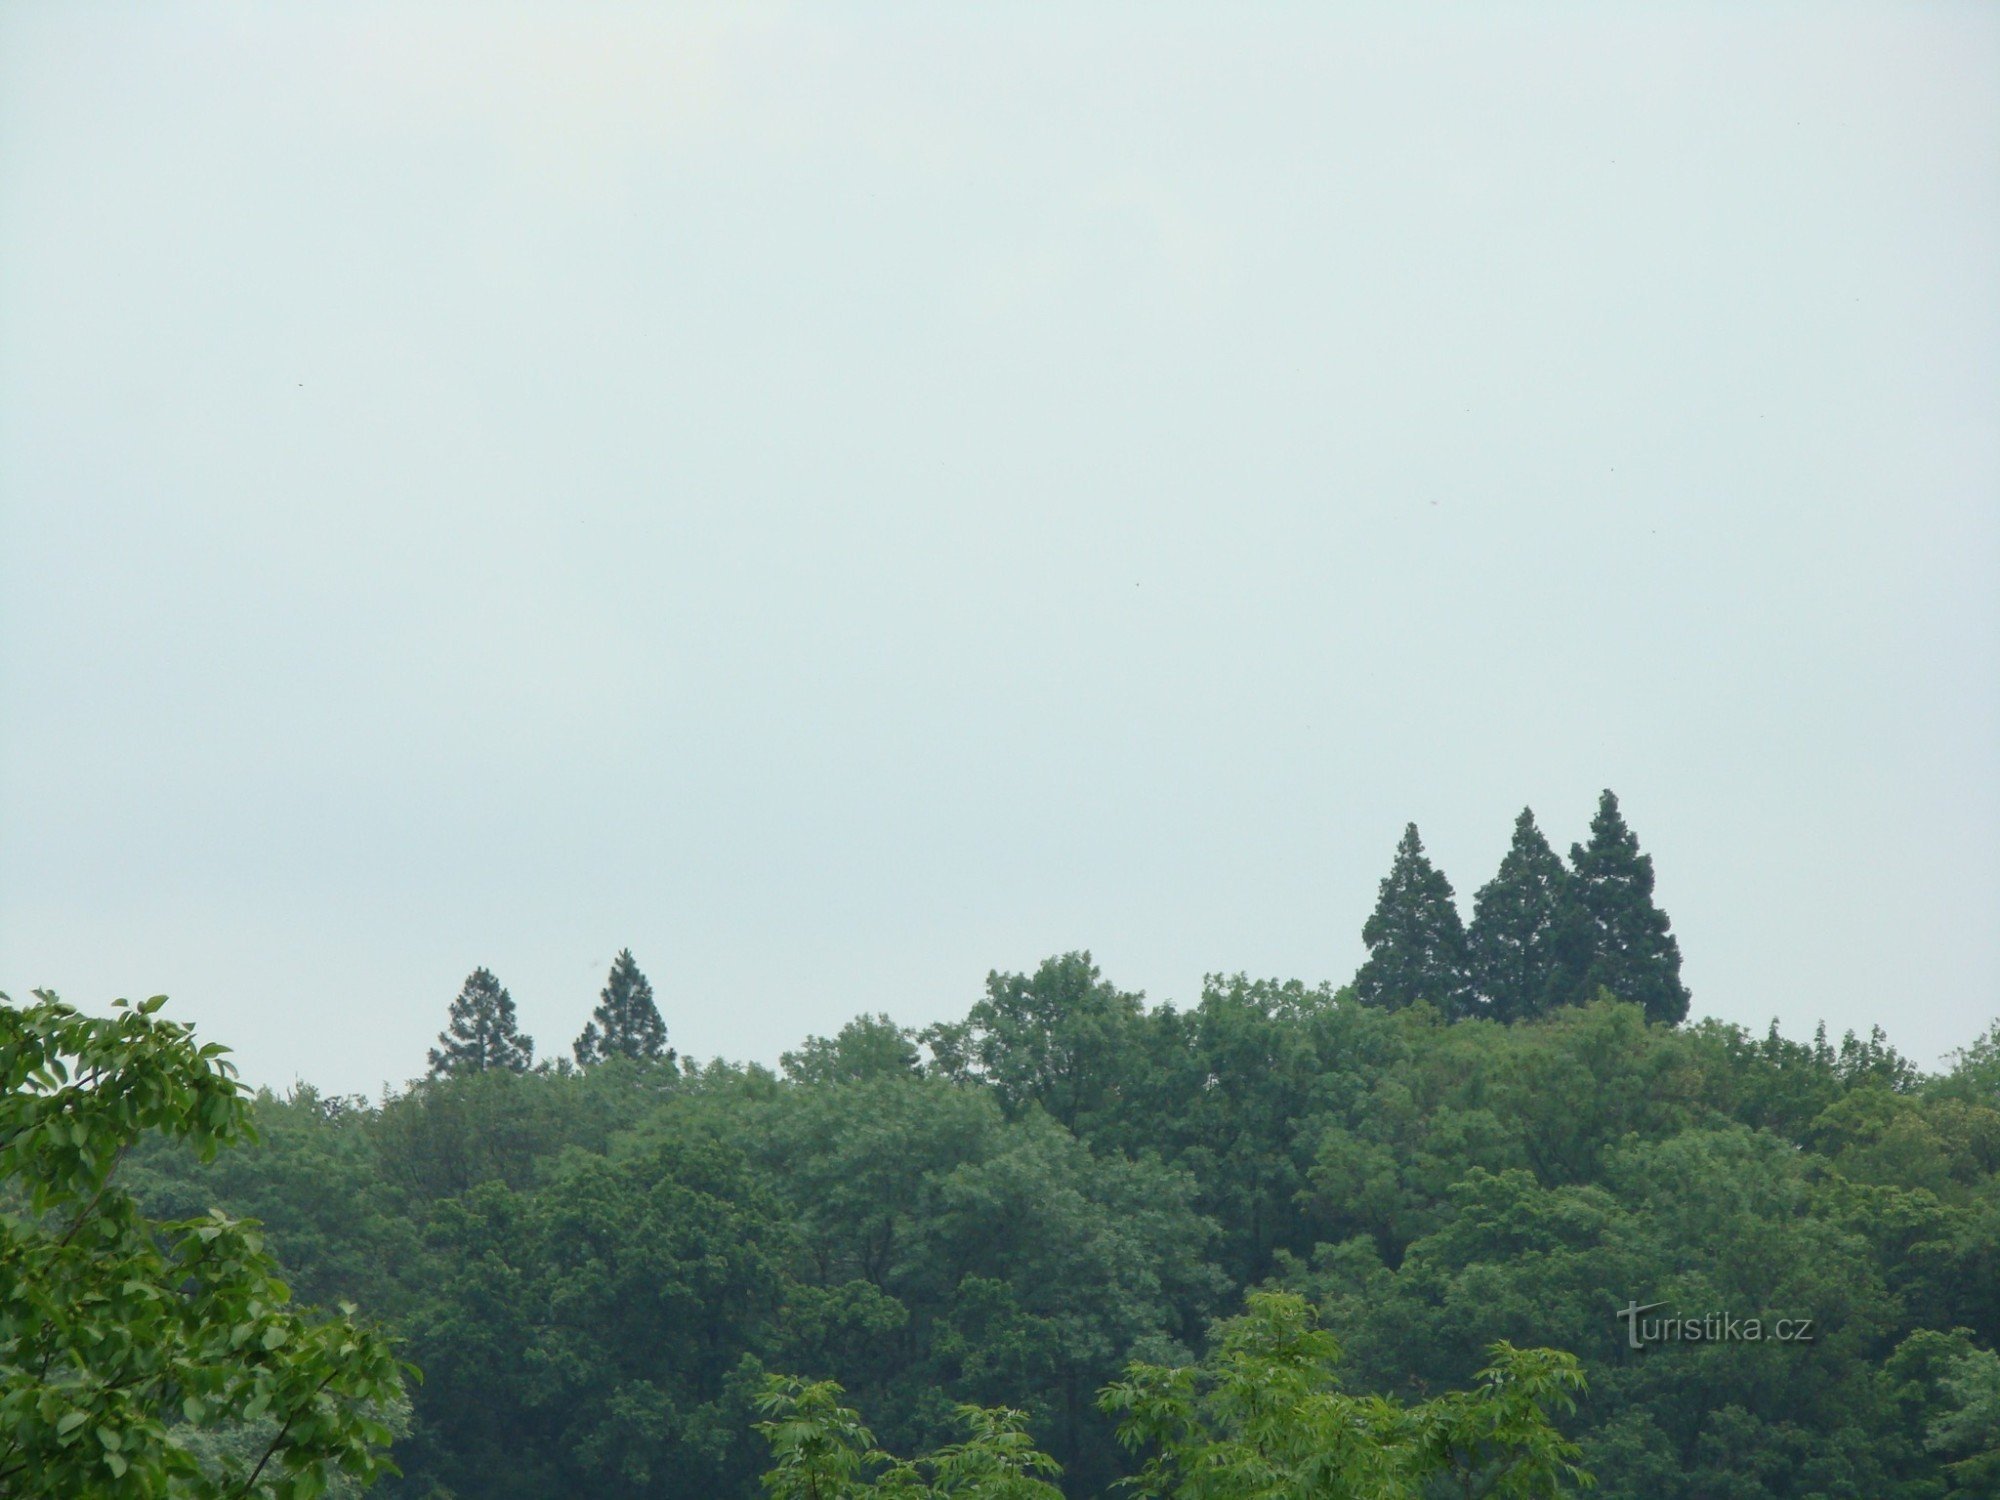 ラトミェジツェの巨大なセコイアの木。 城址公園の他の木よりもはるかに背が高い。